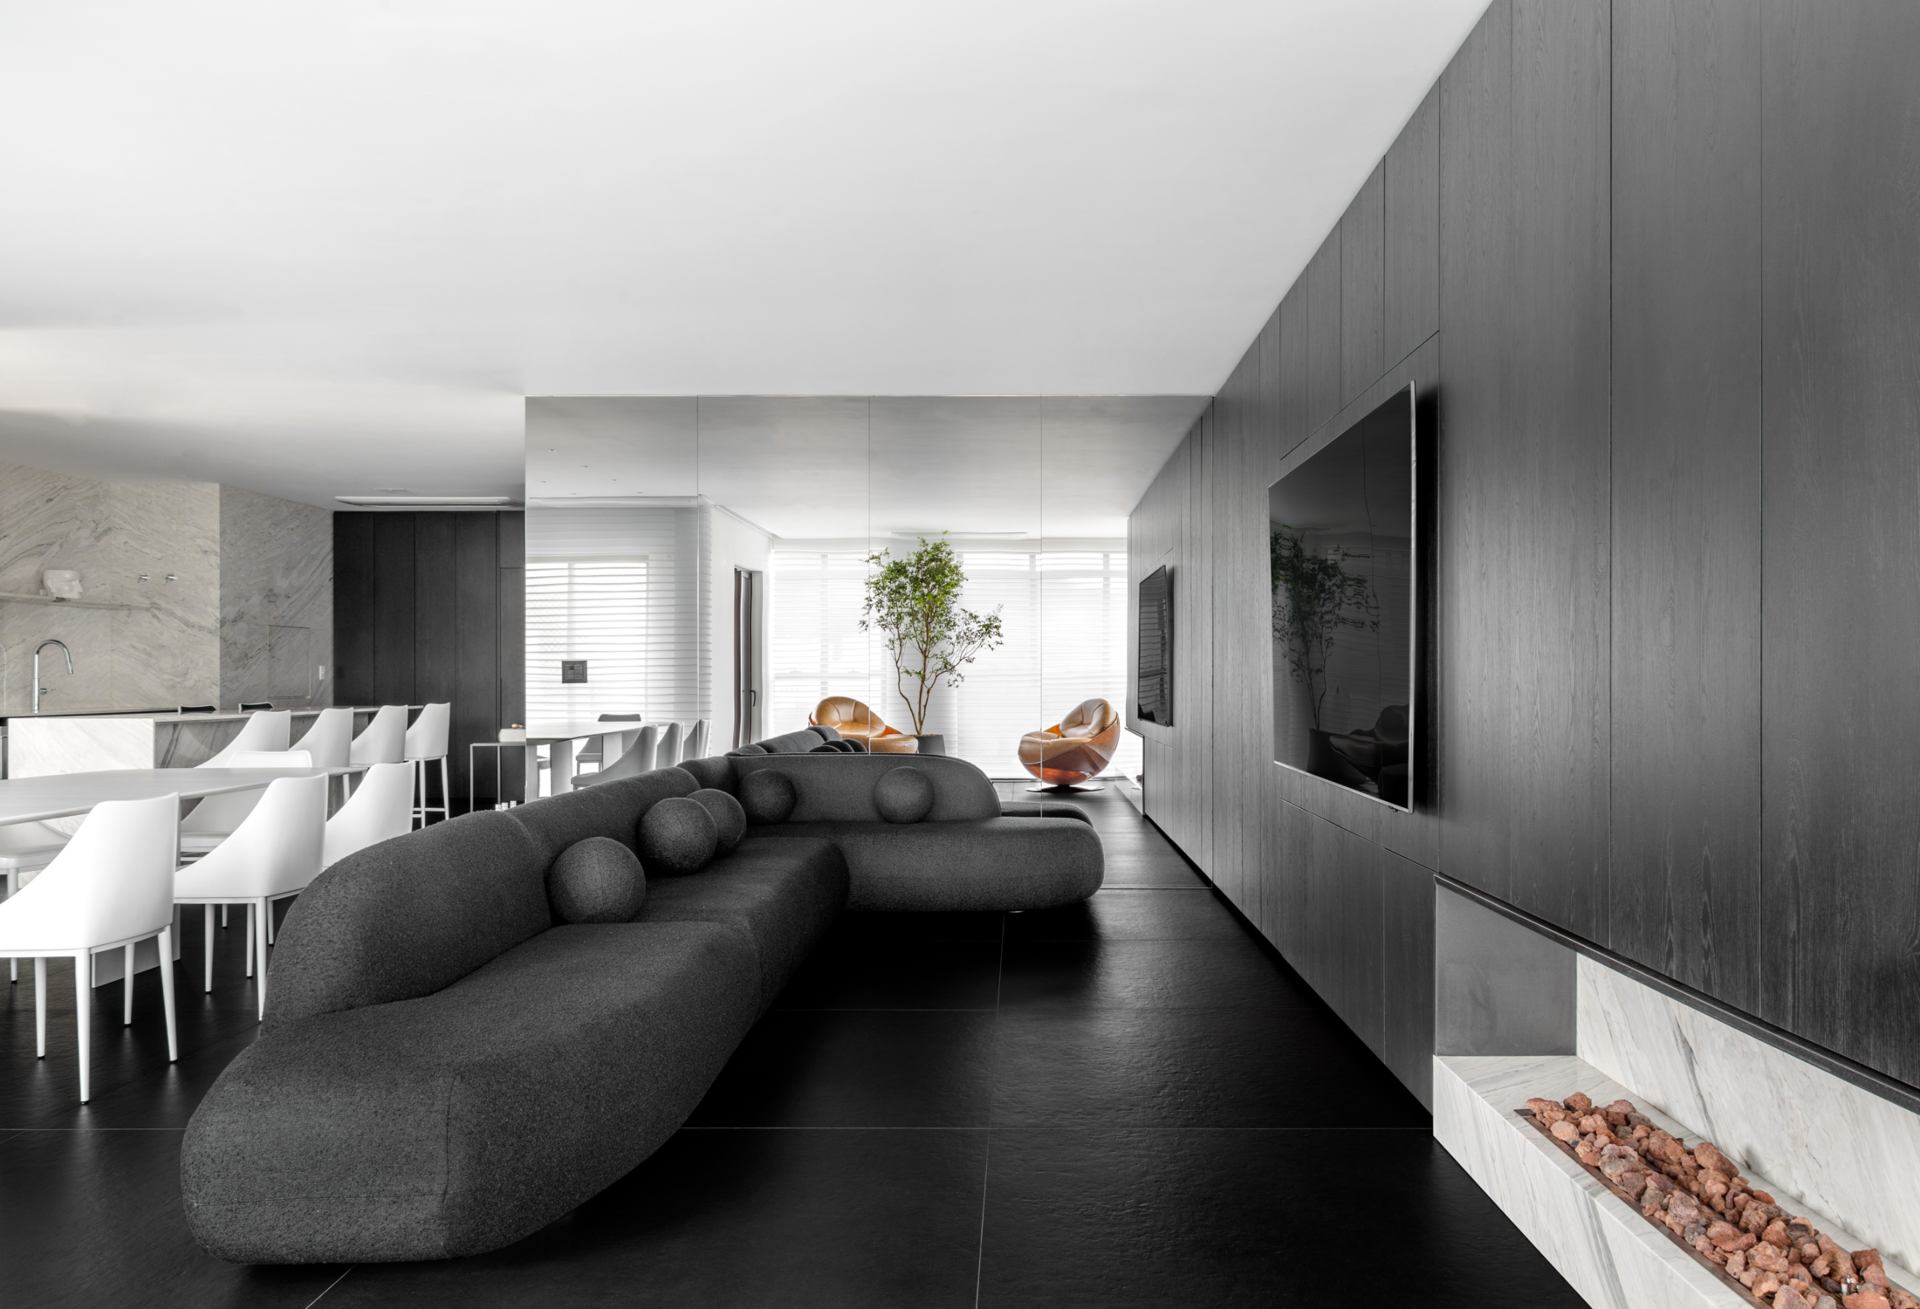 Cozinha, sala de jantar e sala de TV integradas, em estilo moderno e minimalista